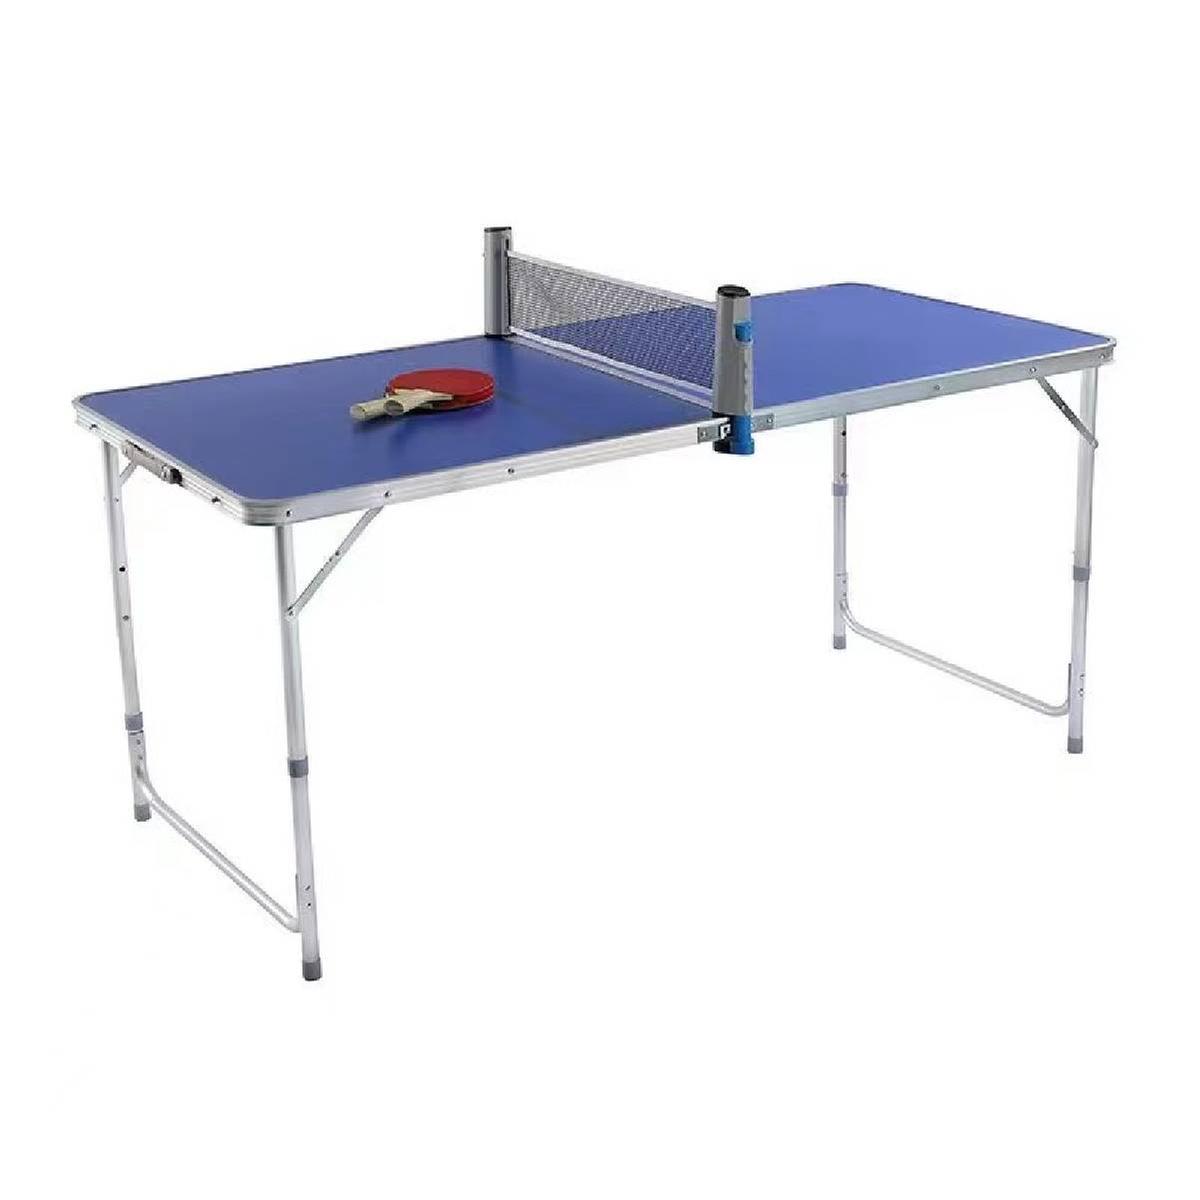 Compro mesa usada de ping pong